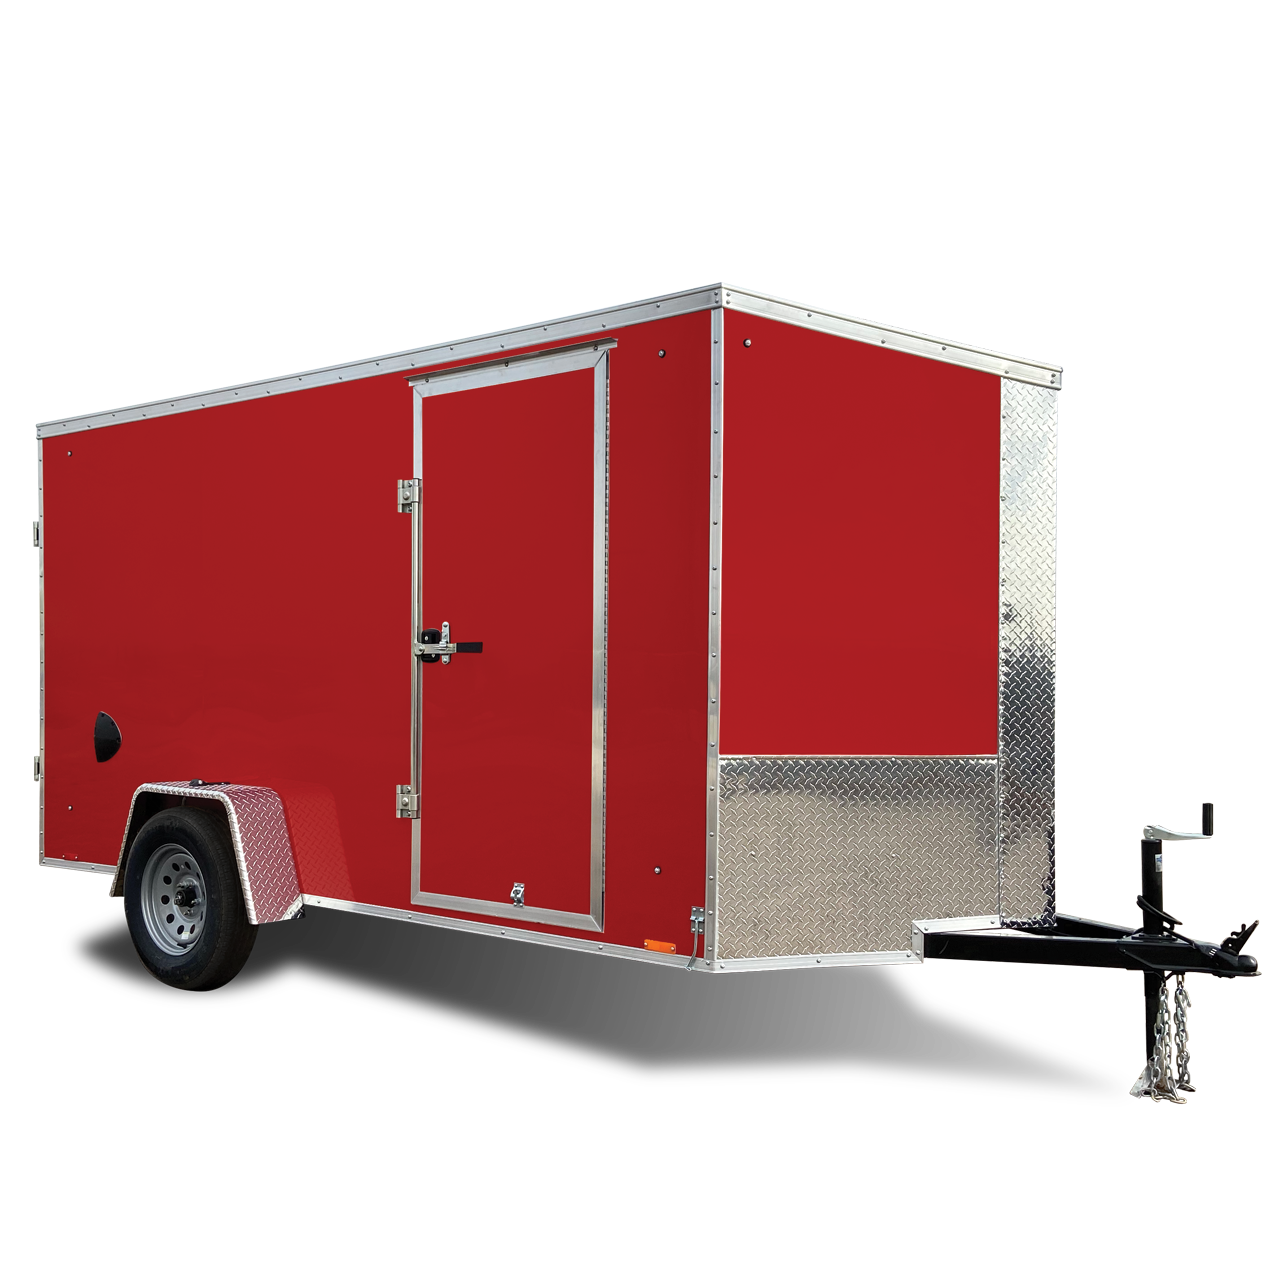 the precious cargo trailer